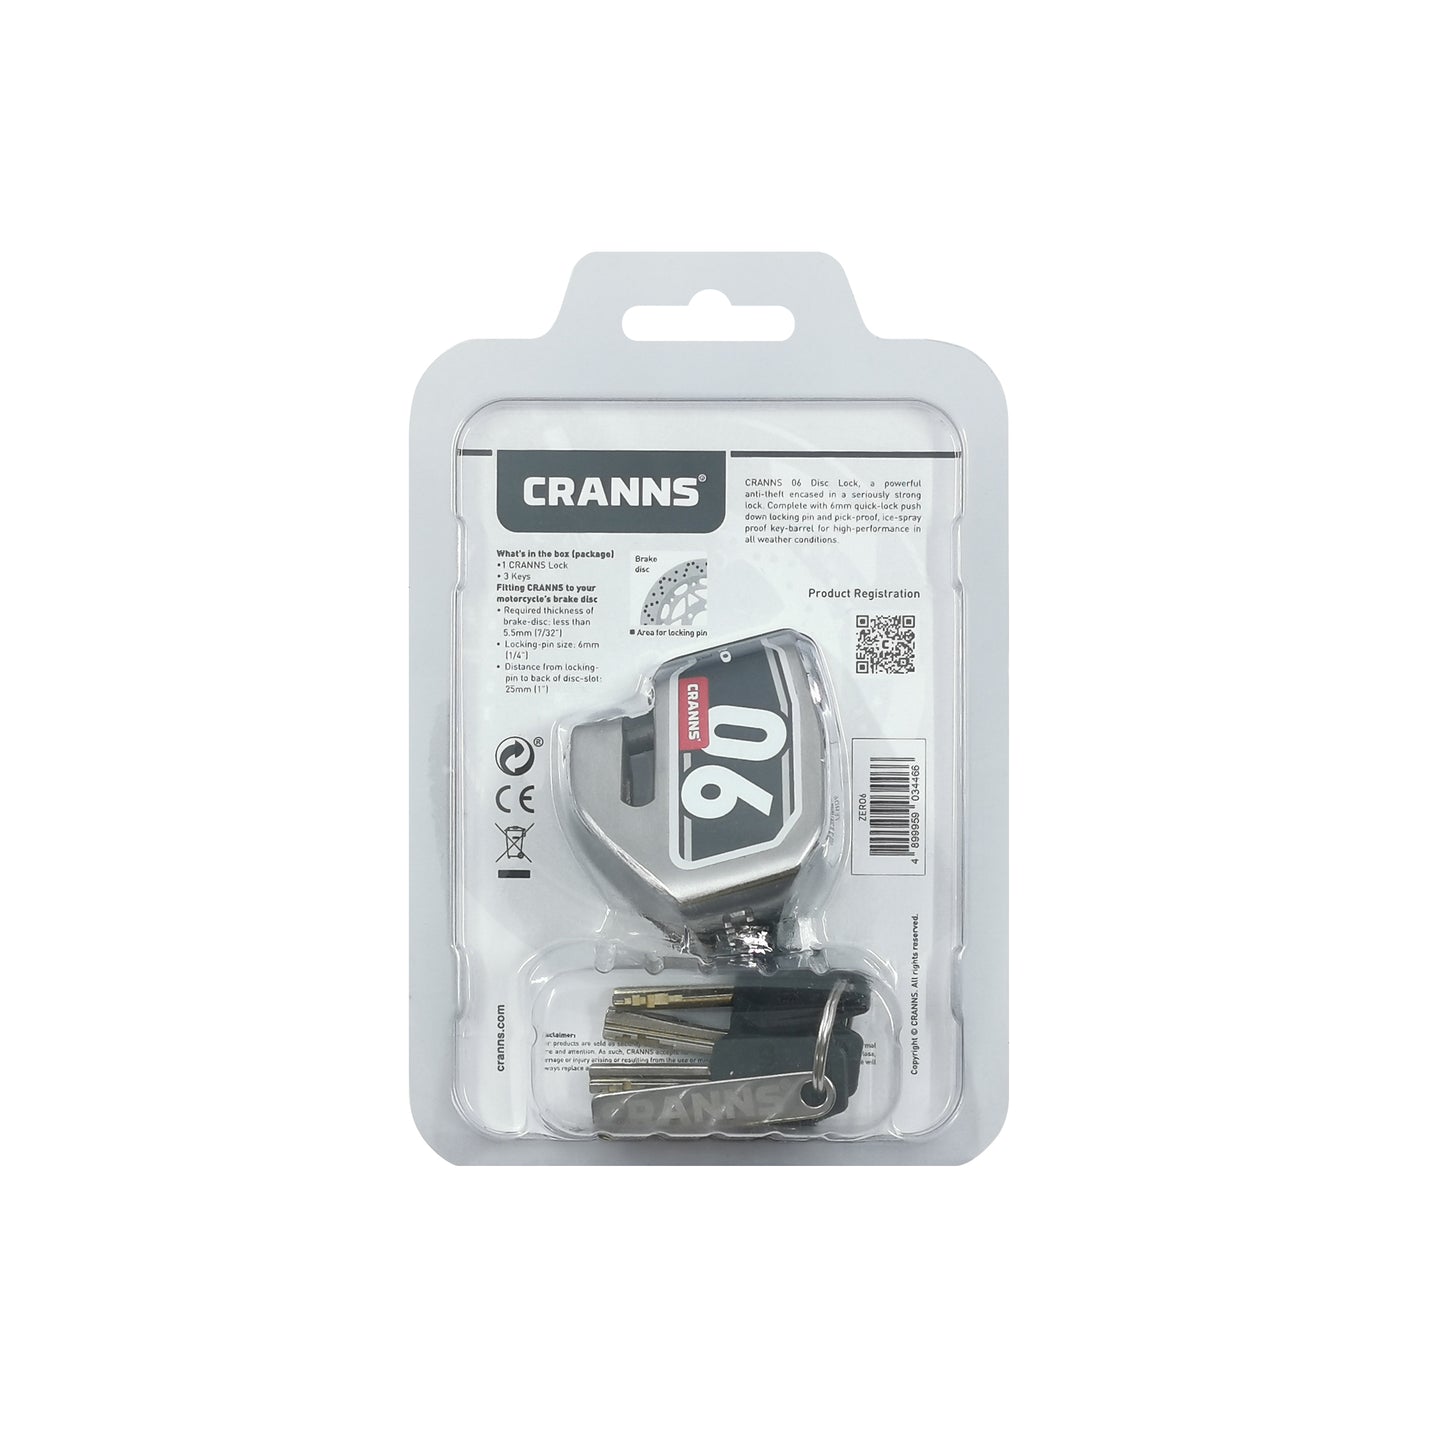 CRANNS Zero6 304 Stainless Steel Disc Lock, Antivol Moto Bloque Disque